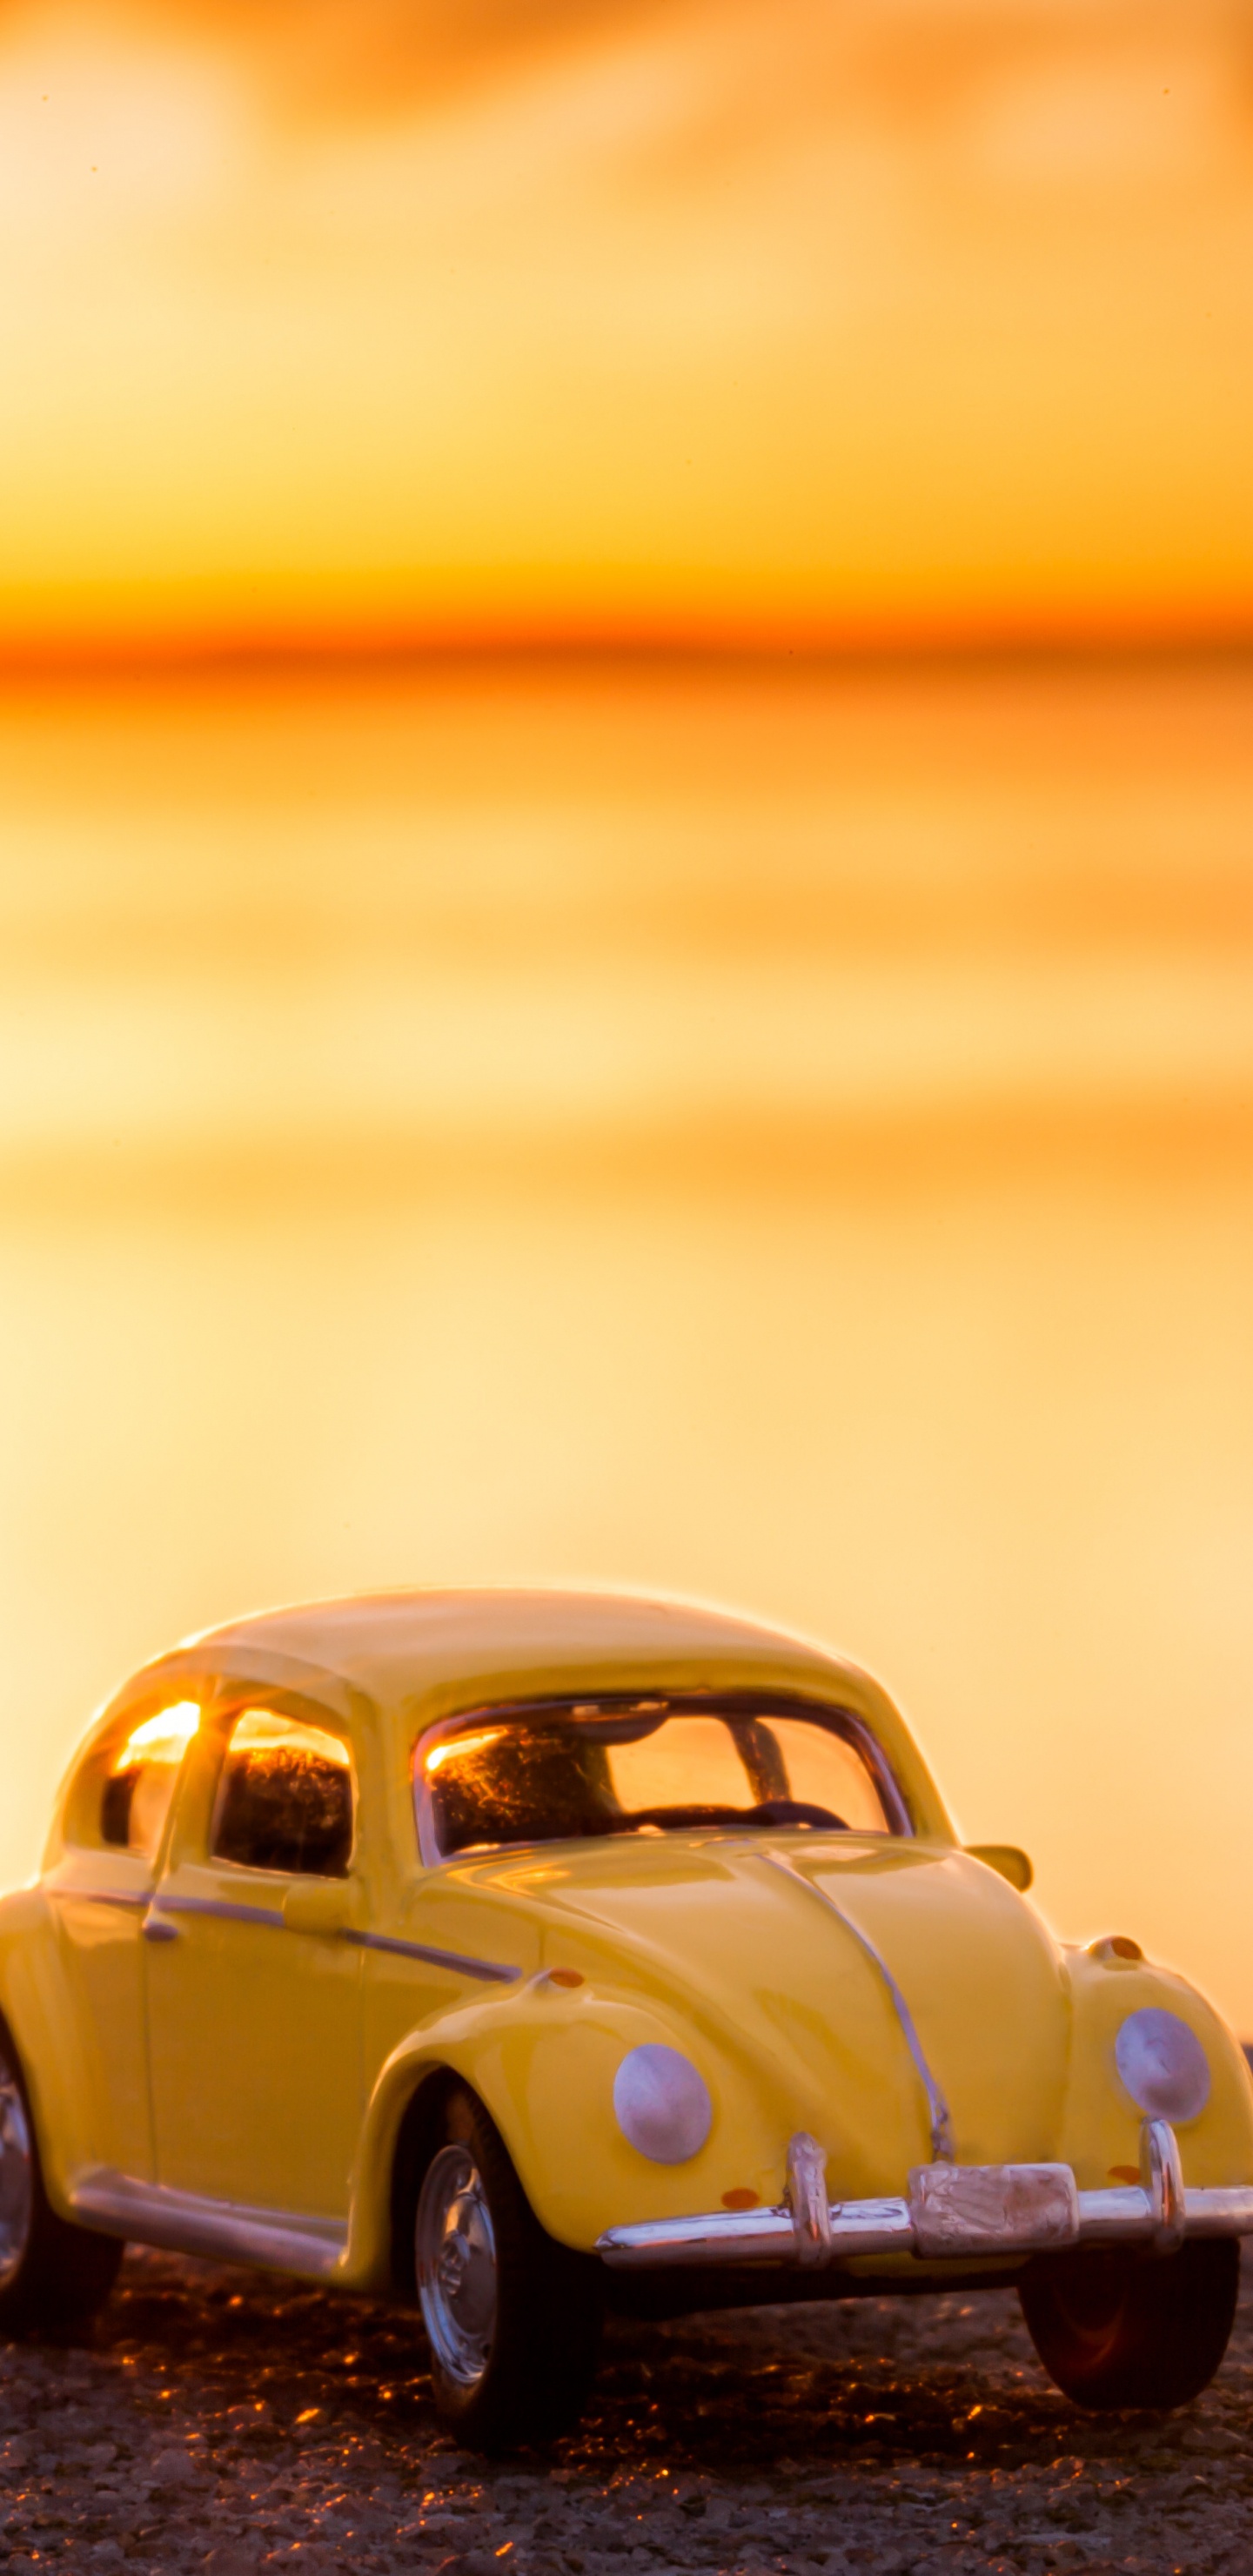 Volkswagen Beetle Jaune Sur le Rivage Pendant le Coucher du Soleil. Wallpaper in 1440x2960 Resolution